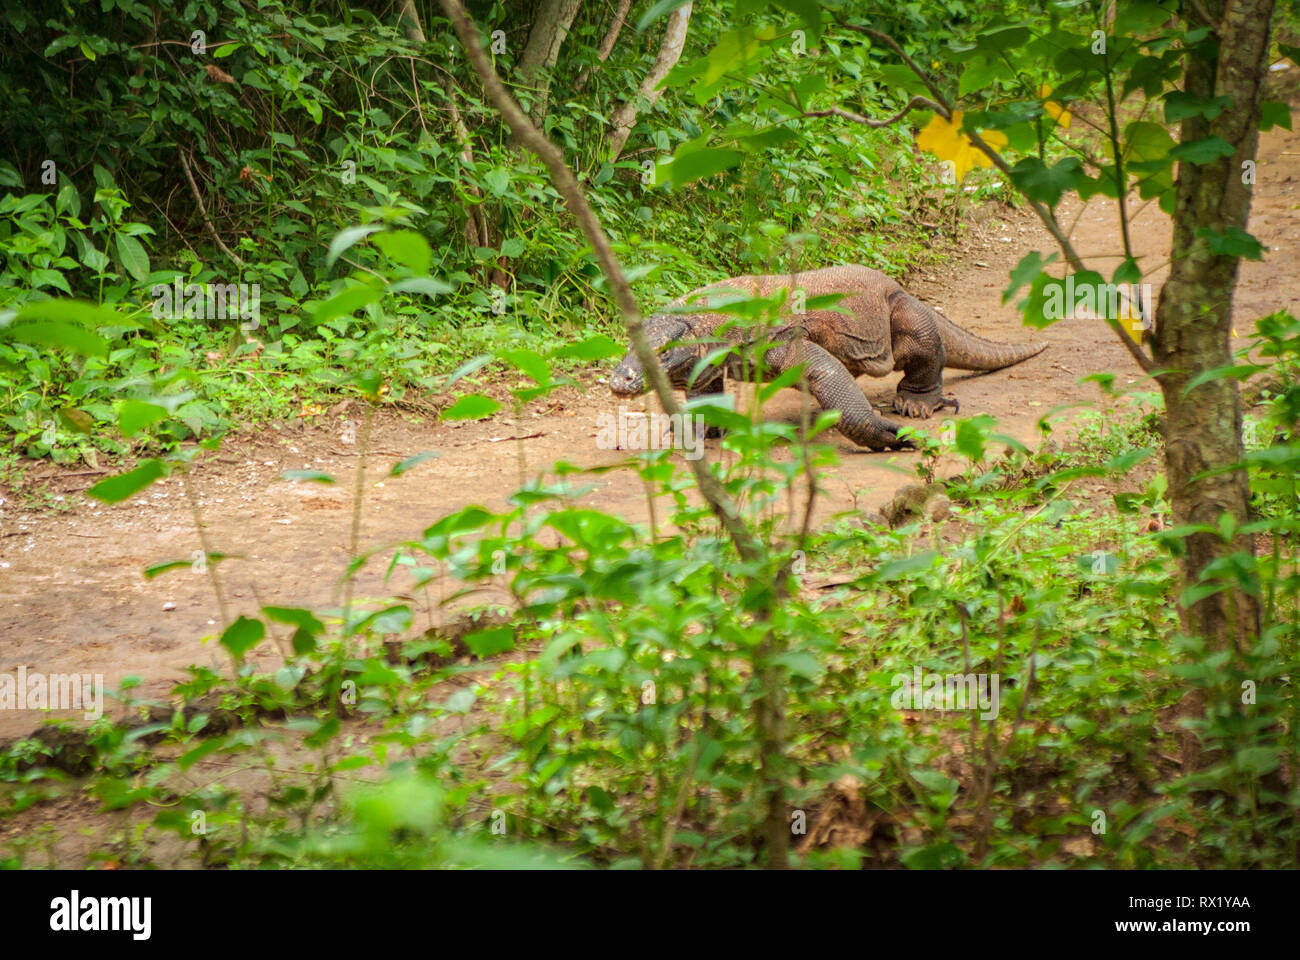 Der Komodo Drachen, auch als die Komodo Monitor genannt, ist eine Pflanzenart aus der Gattung der Eidechse in der Indonesischen Inseln Komodo und Rinca gefunden. Sie sind gefährlich. Stockfoto